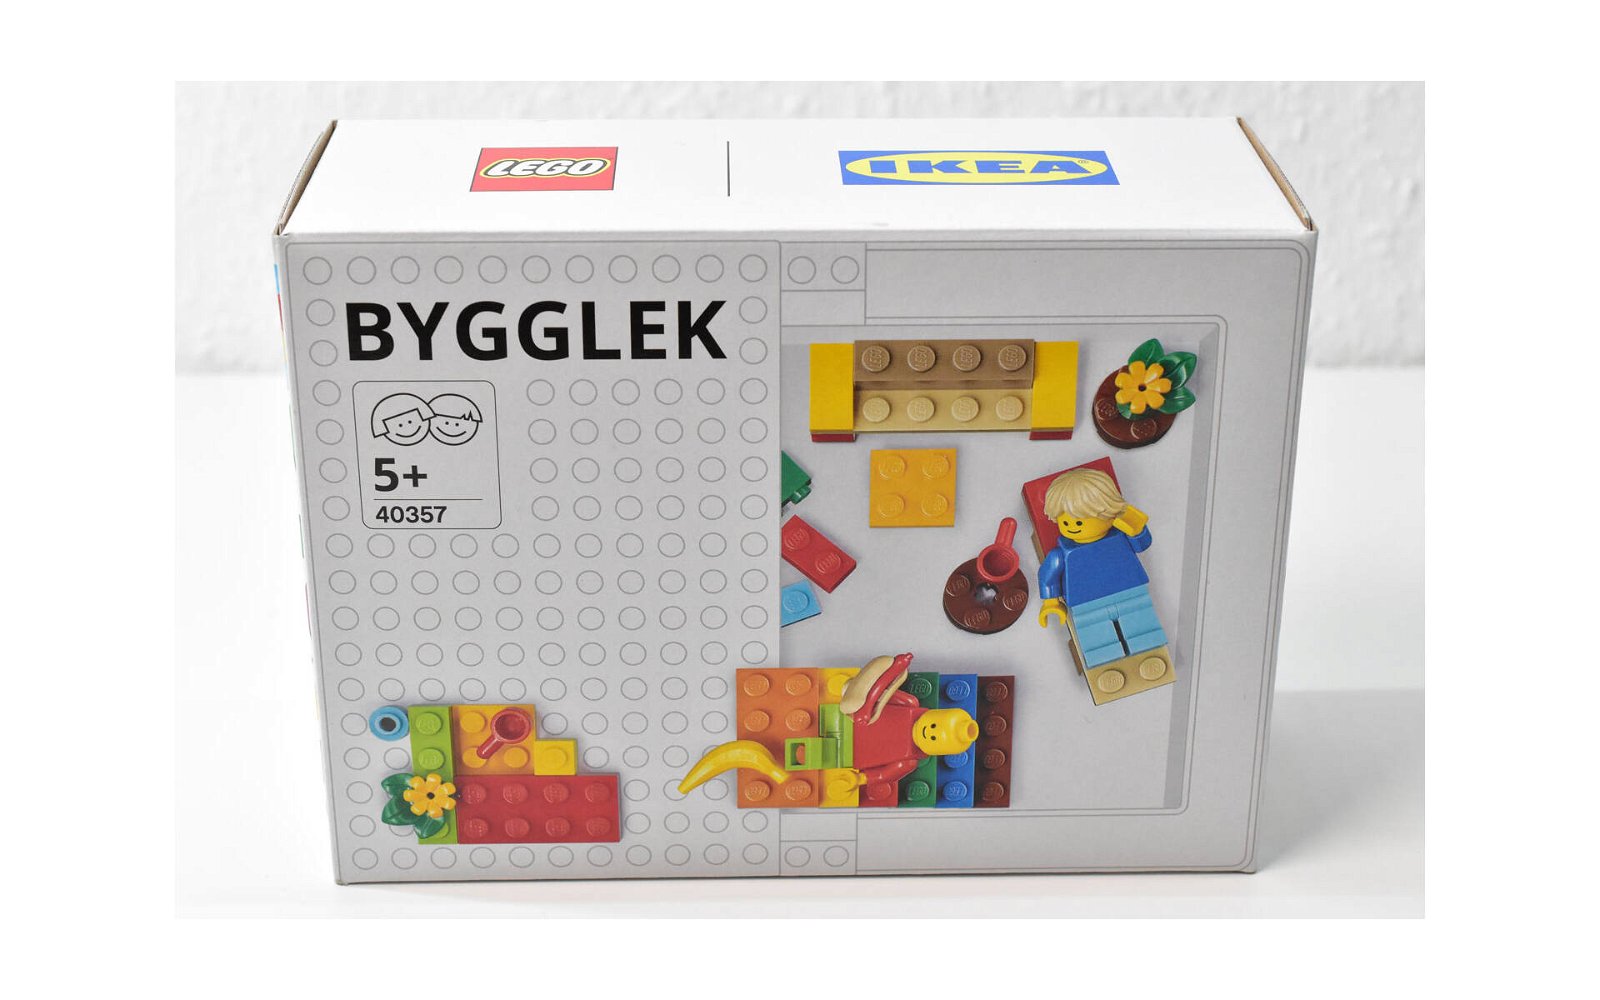 Immagine di LEGO IKEA: presentata ufficialmente la nuova linea BYGGLEK